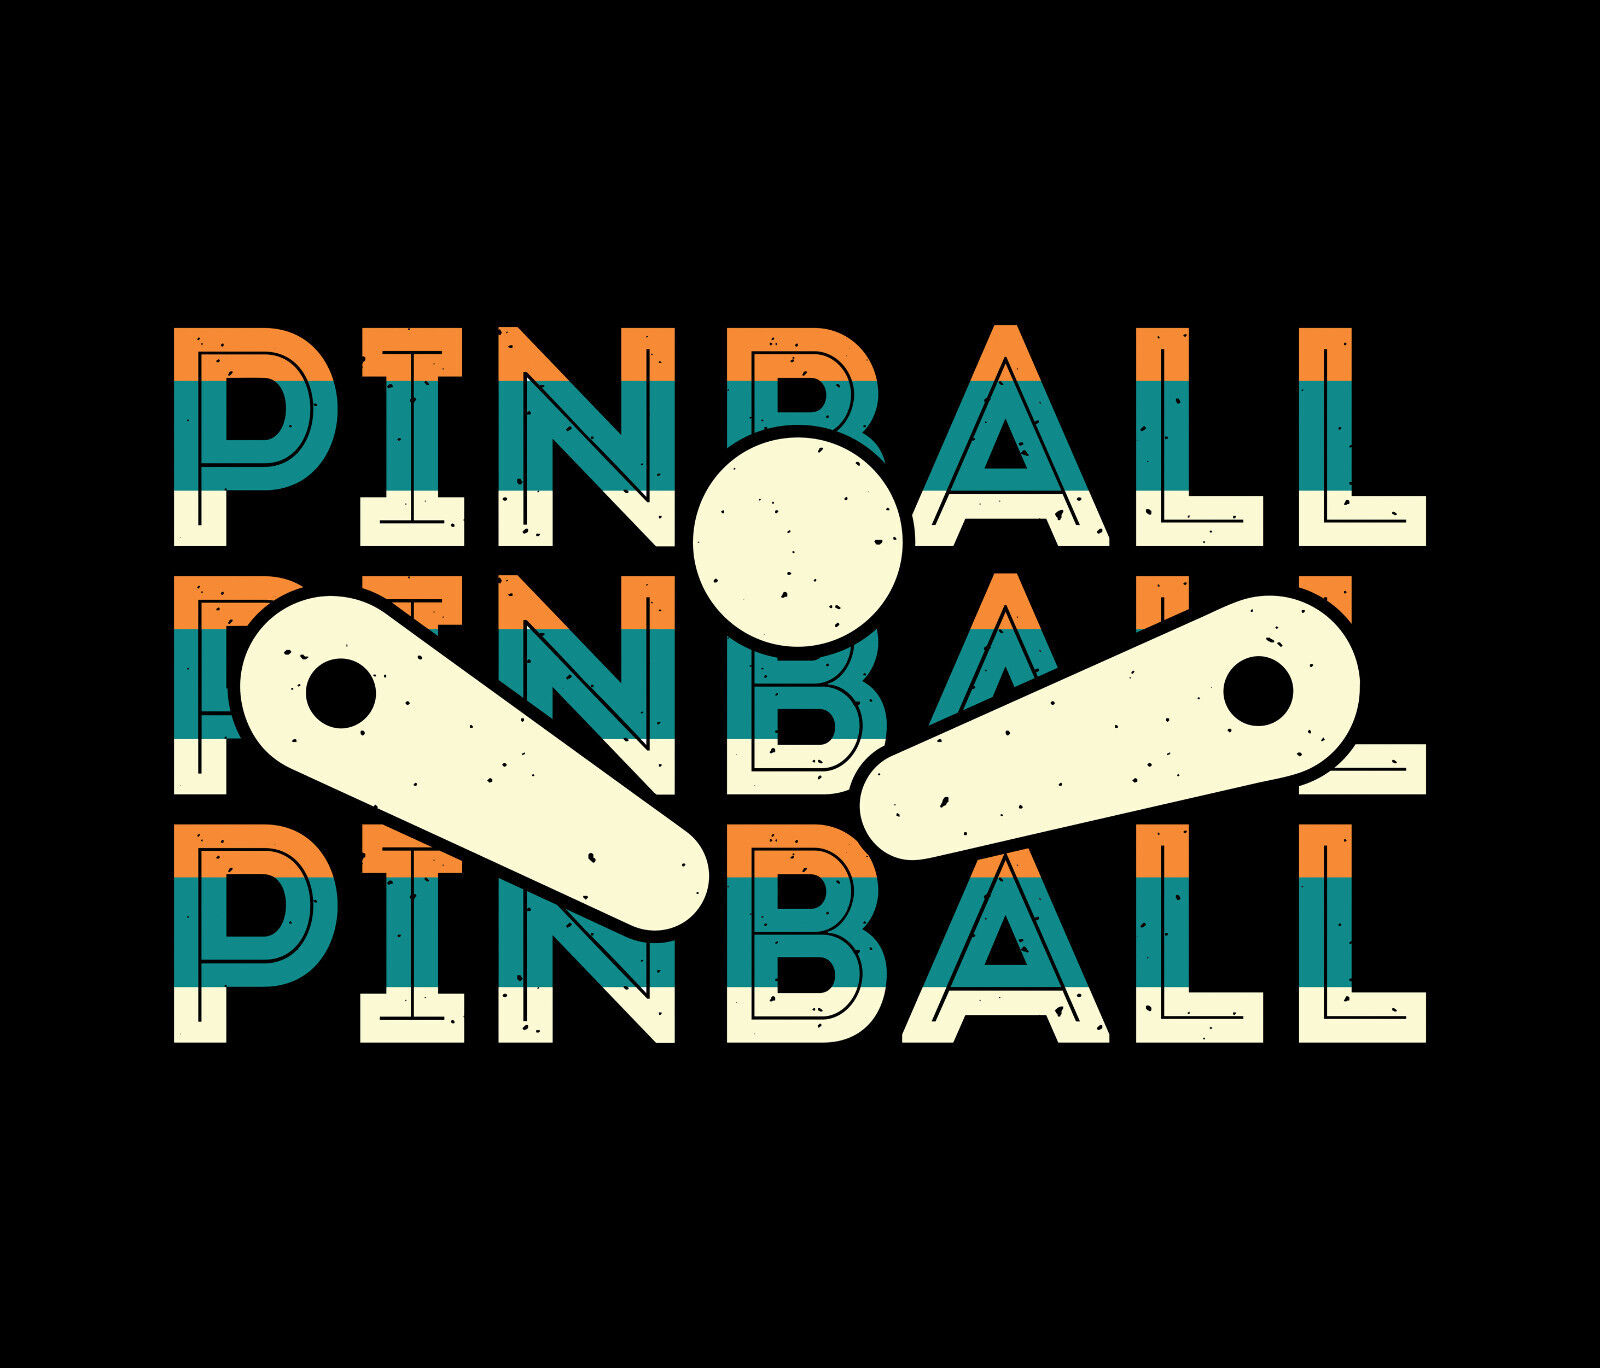 Pinball Player #6 - Mouse Pad - Pinball Wizard Pins Retro Arcade Mousepad Gift